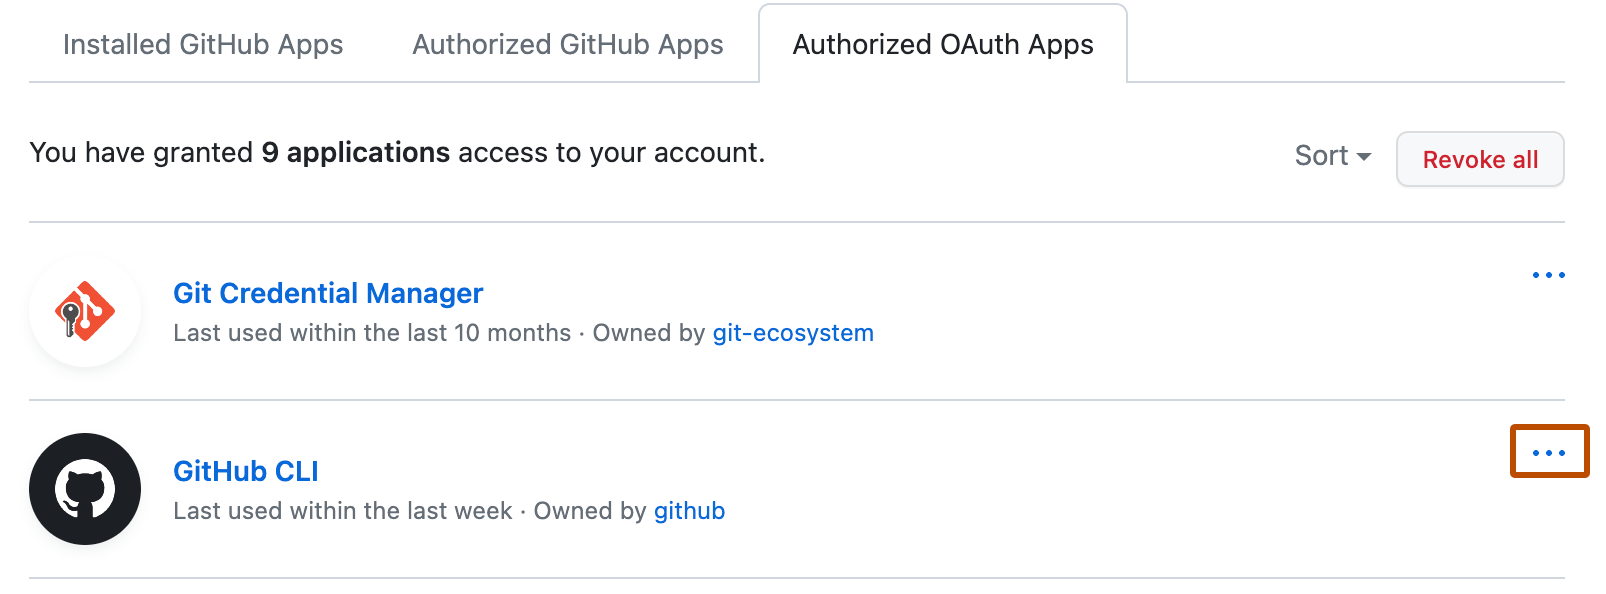 Liste des OAuth Apps autorisées